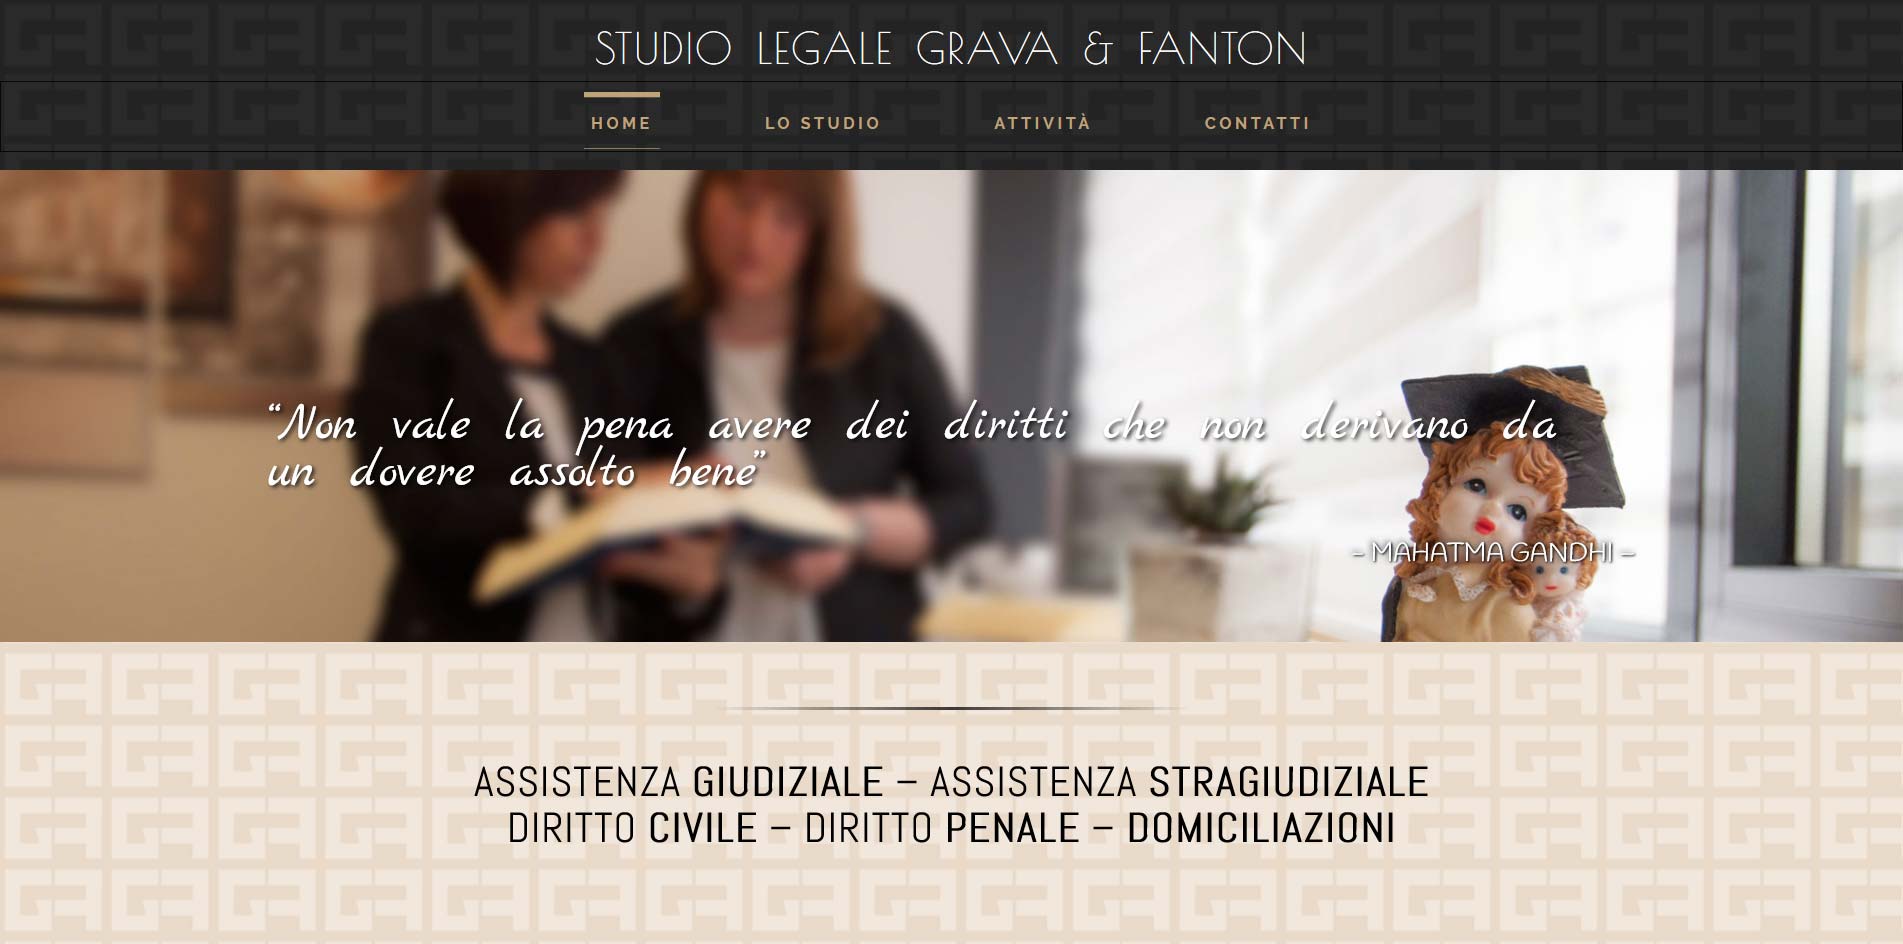 Studio Legale Grava & Fanton, assistenza legale giudiziale e stragiudiziale